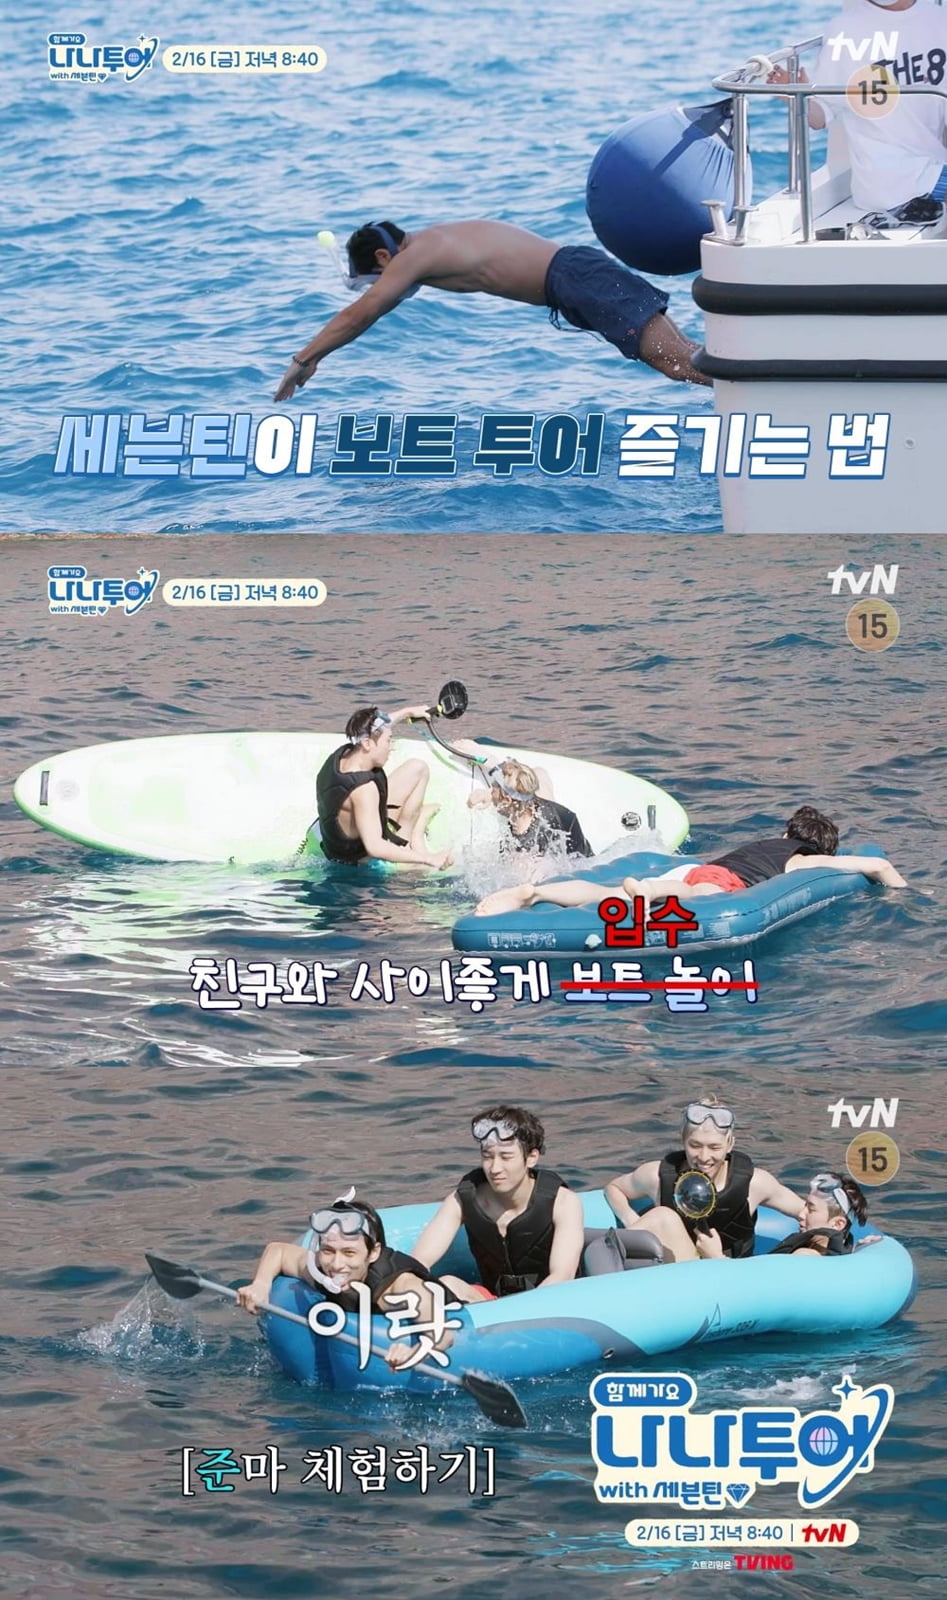 사진 제공: tvN  예고 영상 캡처